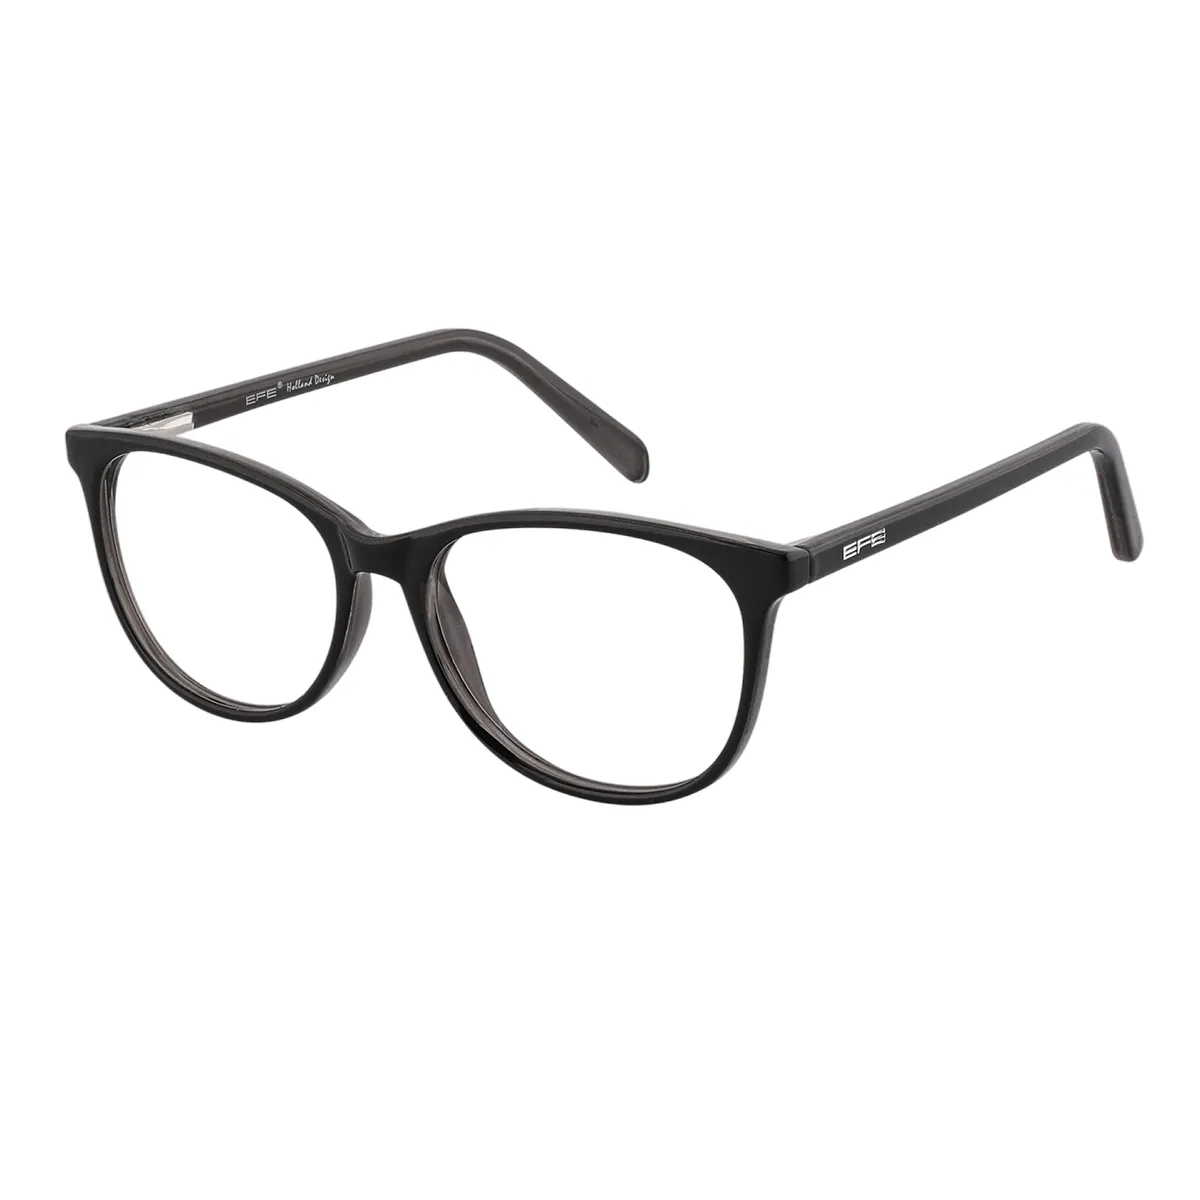 Lindsay - Oval Black Glasses for Men & Women